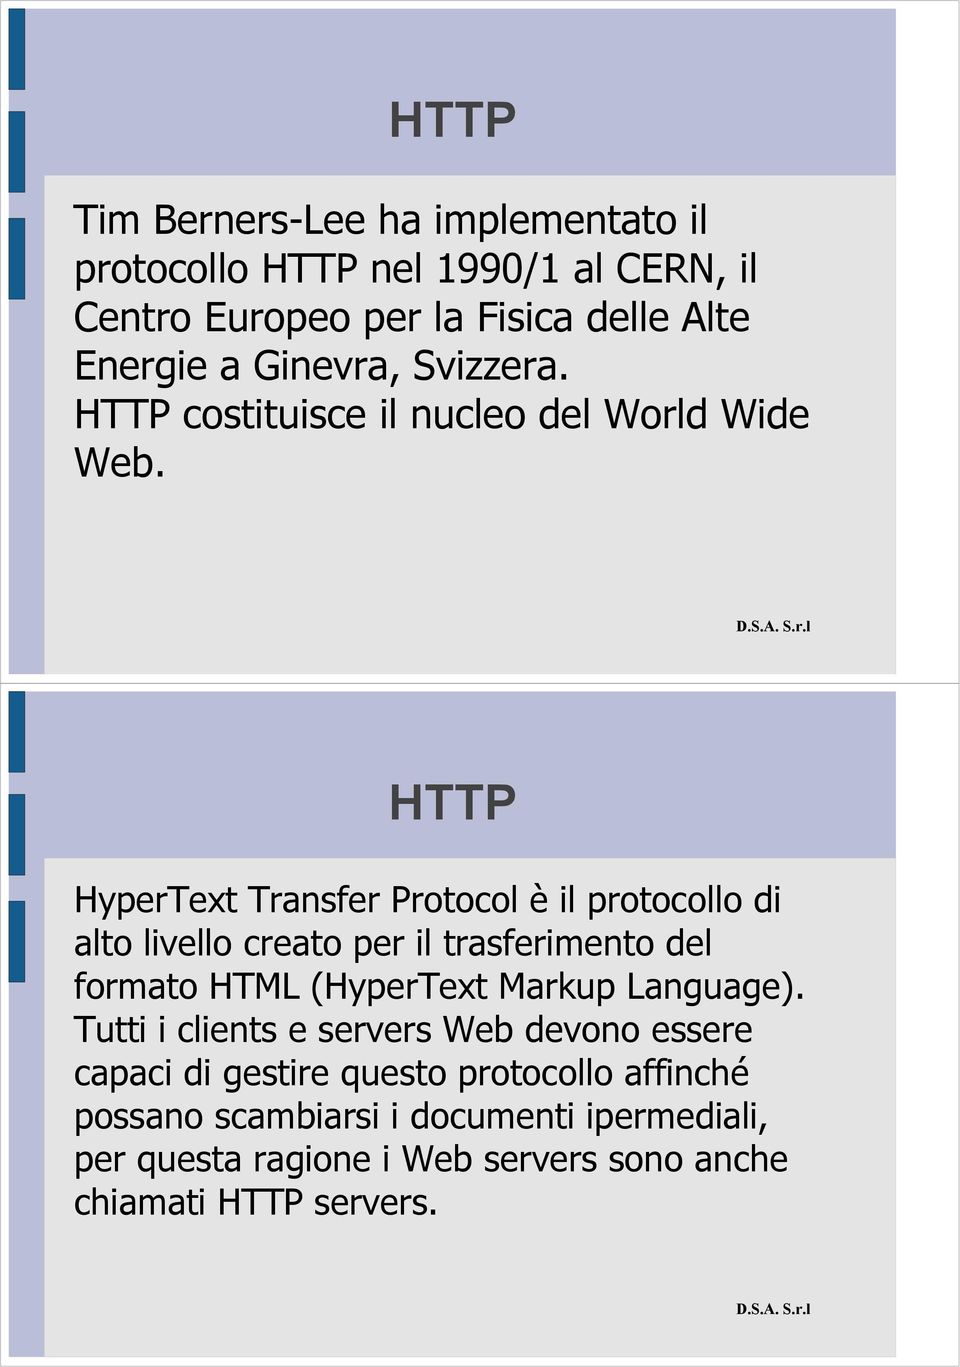 HyperText Transfer Protocol è il protocollo di alto livello creato per il trasferimento del formato HTML (HyperText Markup